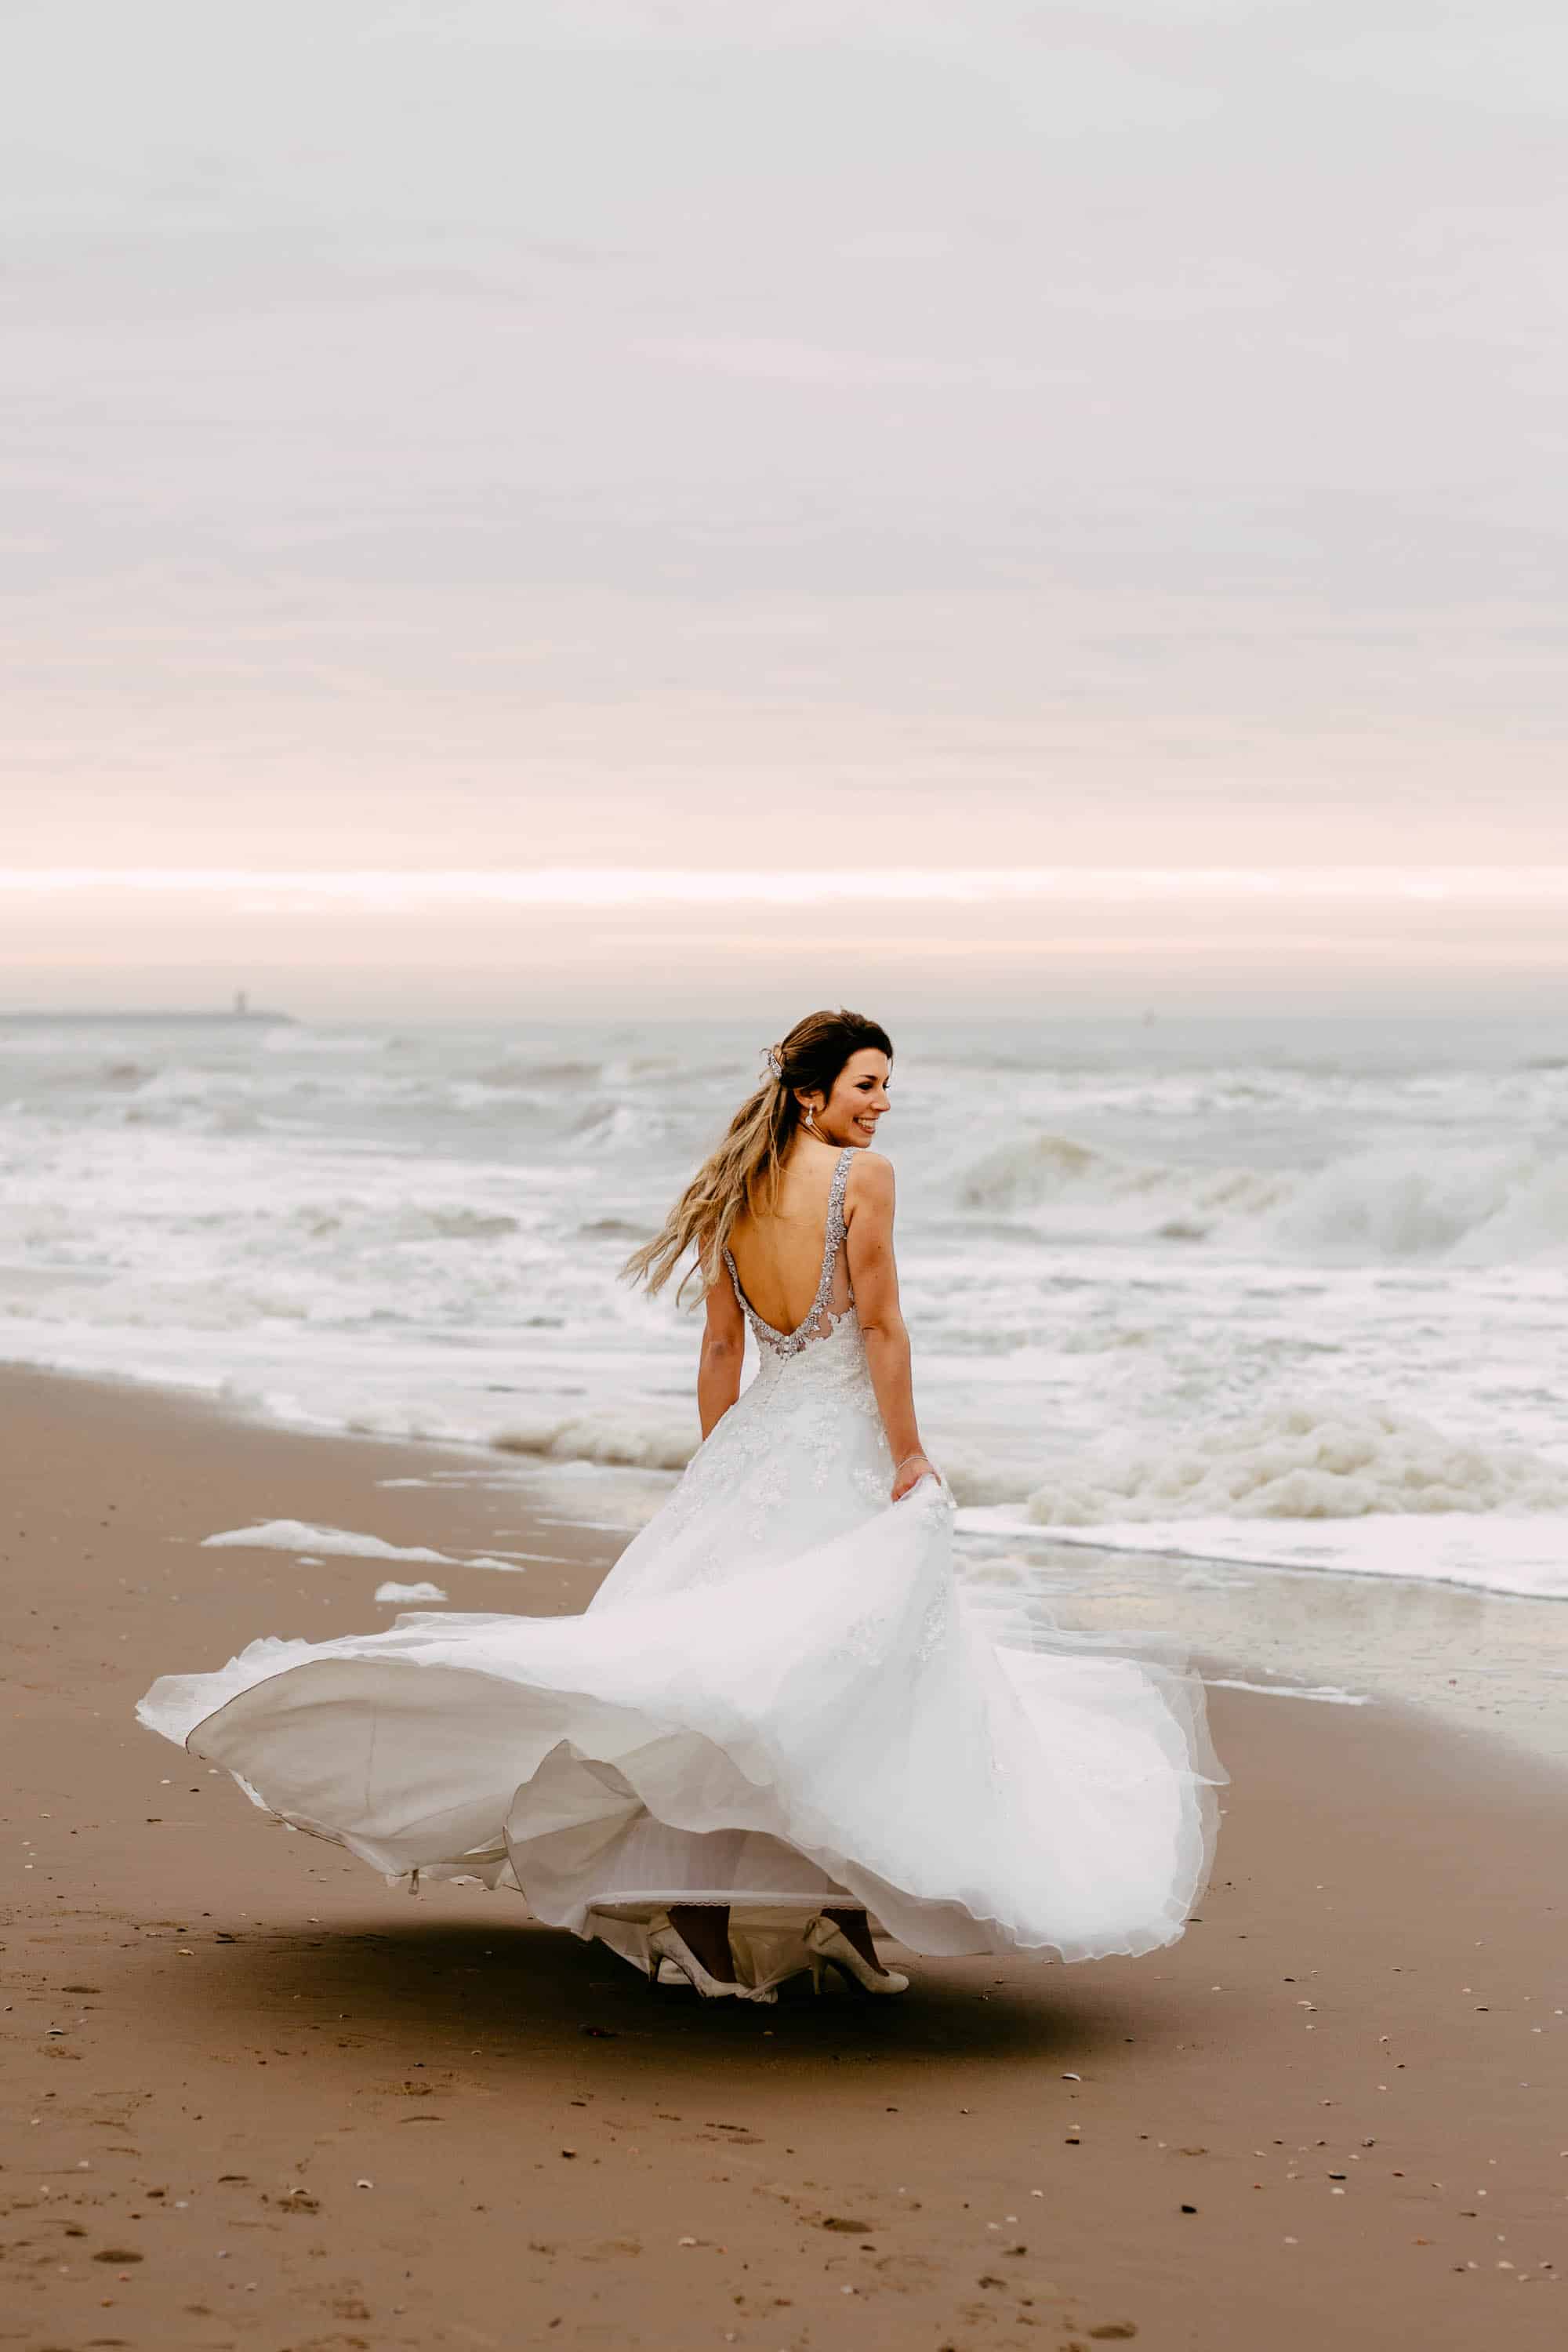 Een bruid die in haar trouwjurk over het strand rent.